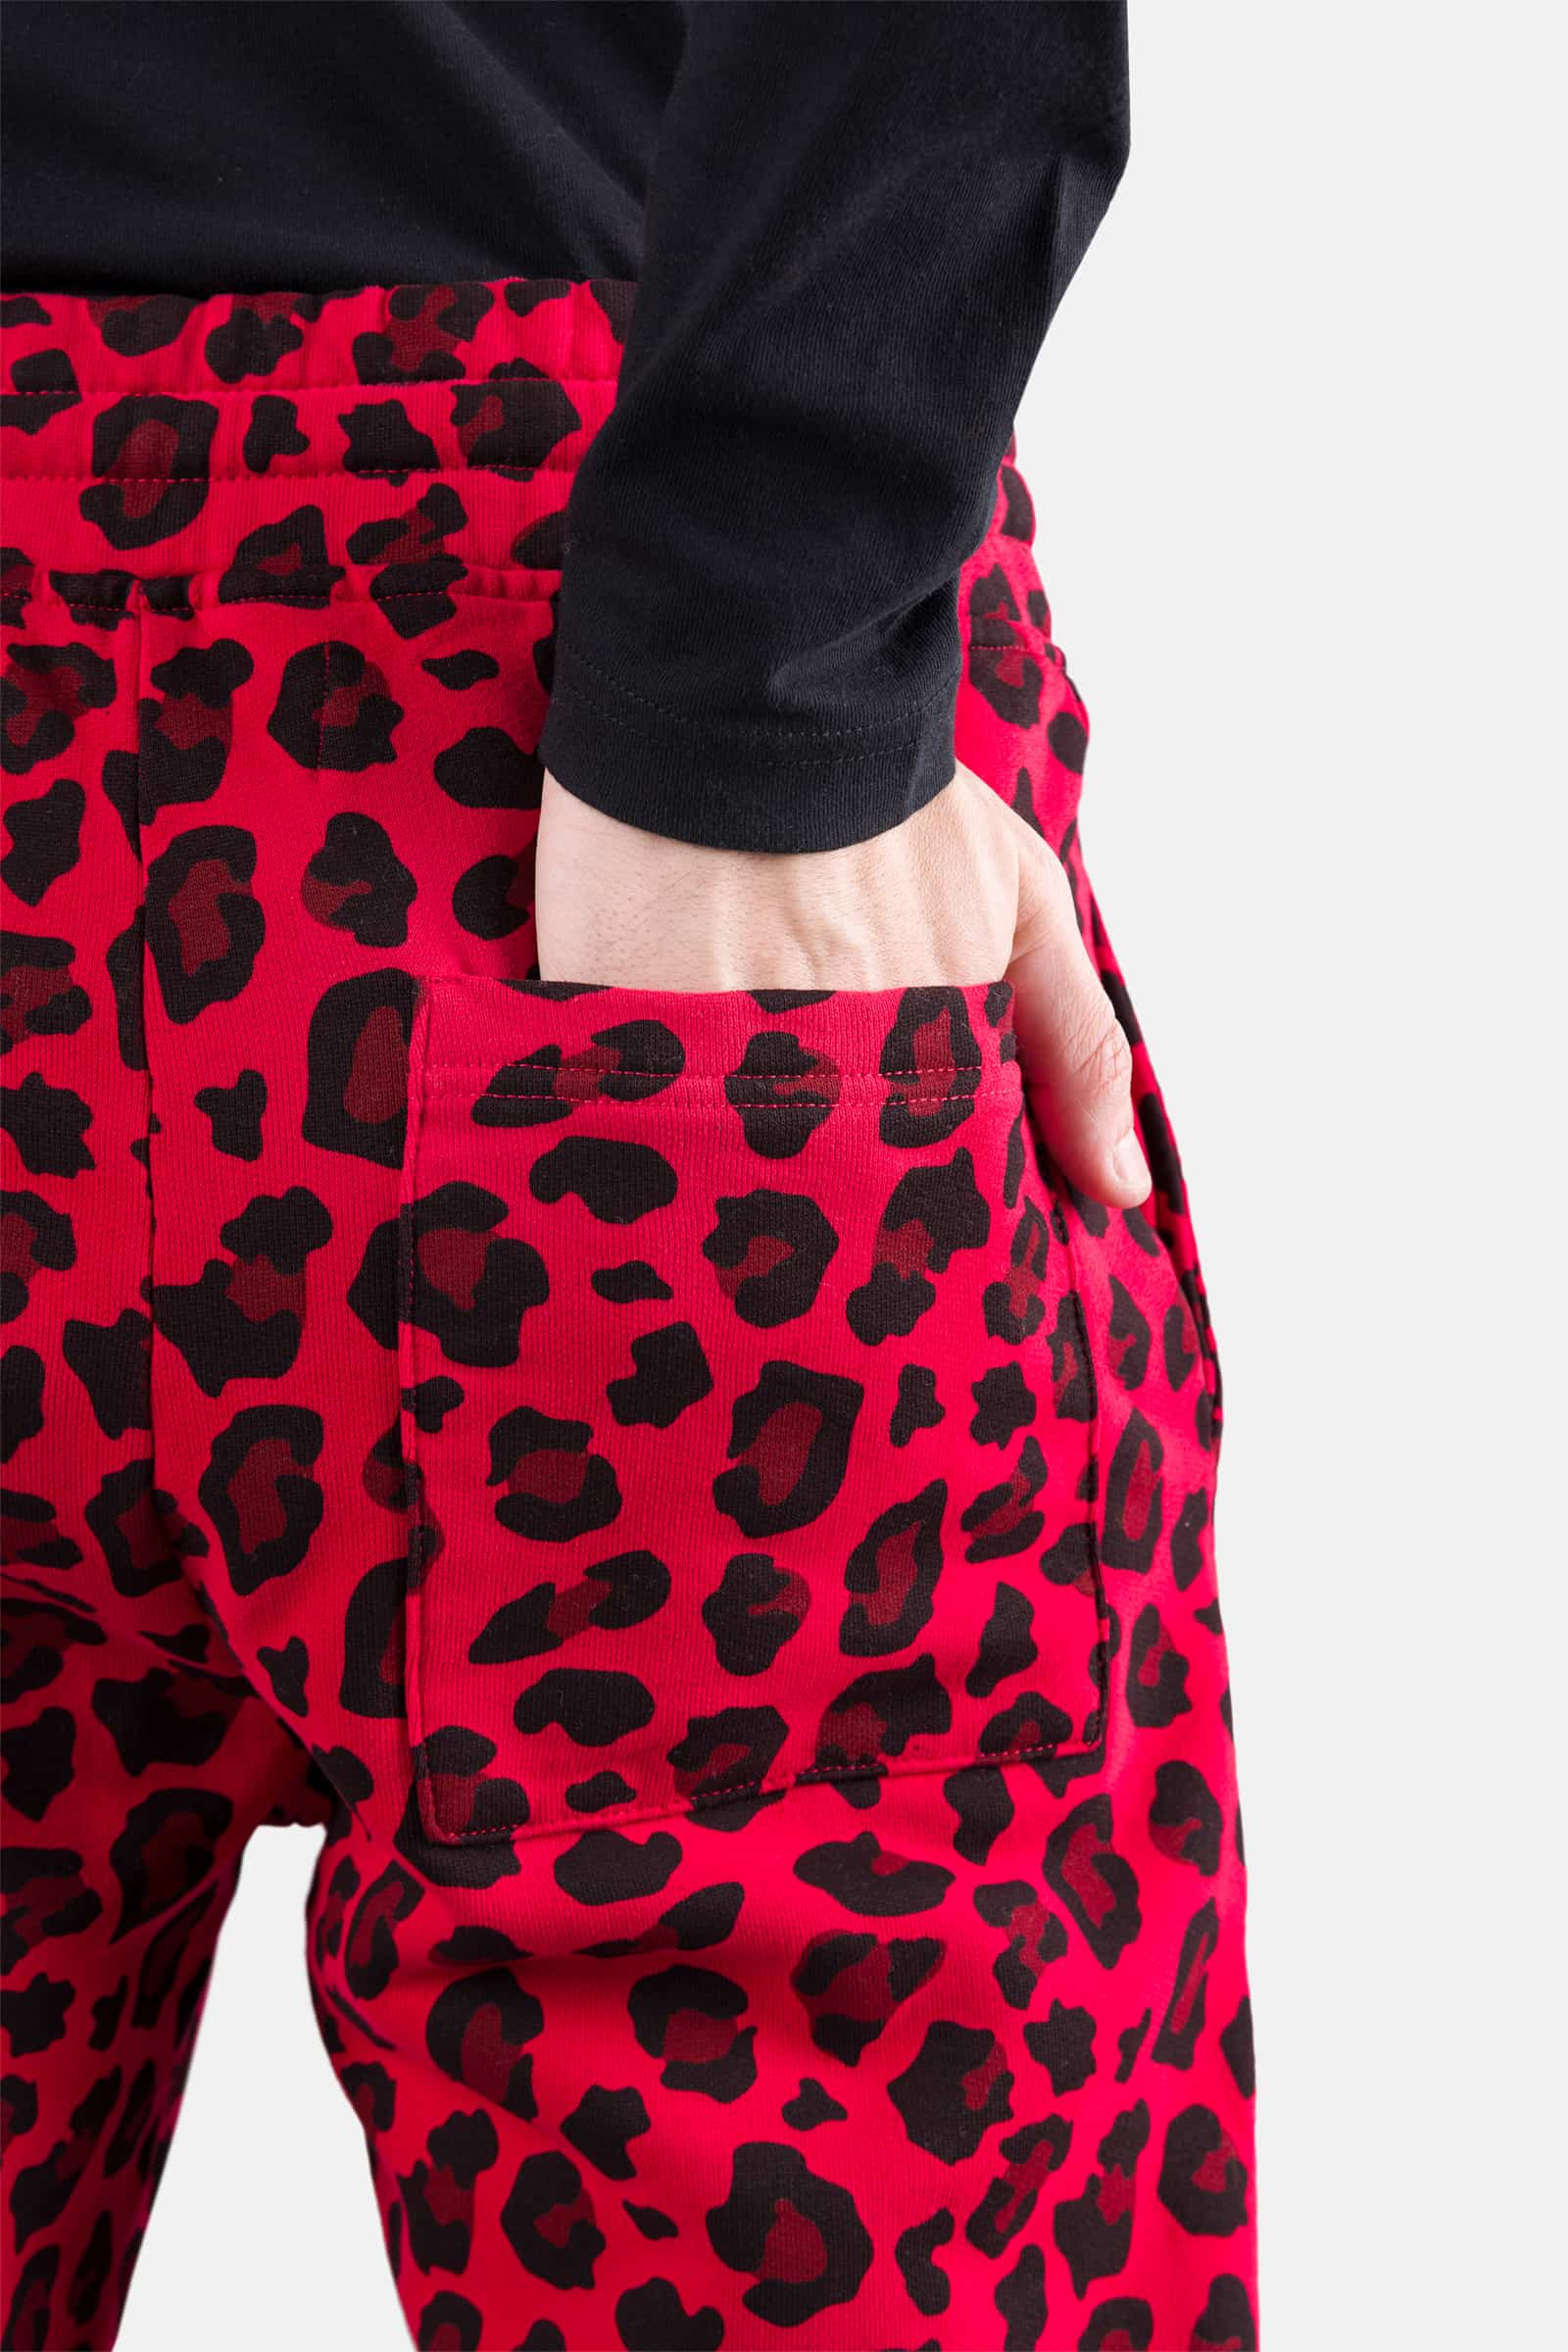 PRINTED PANTS - RED JAGUAR - Hydrogen - Luxury Sportwear